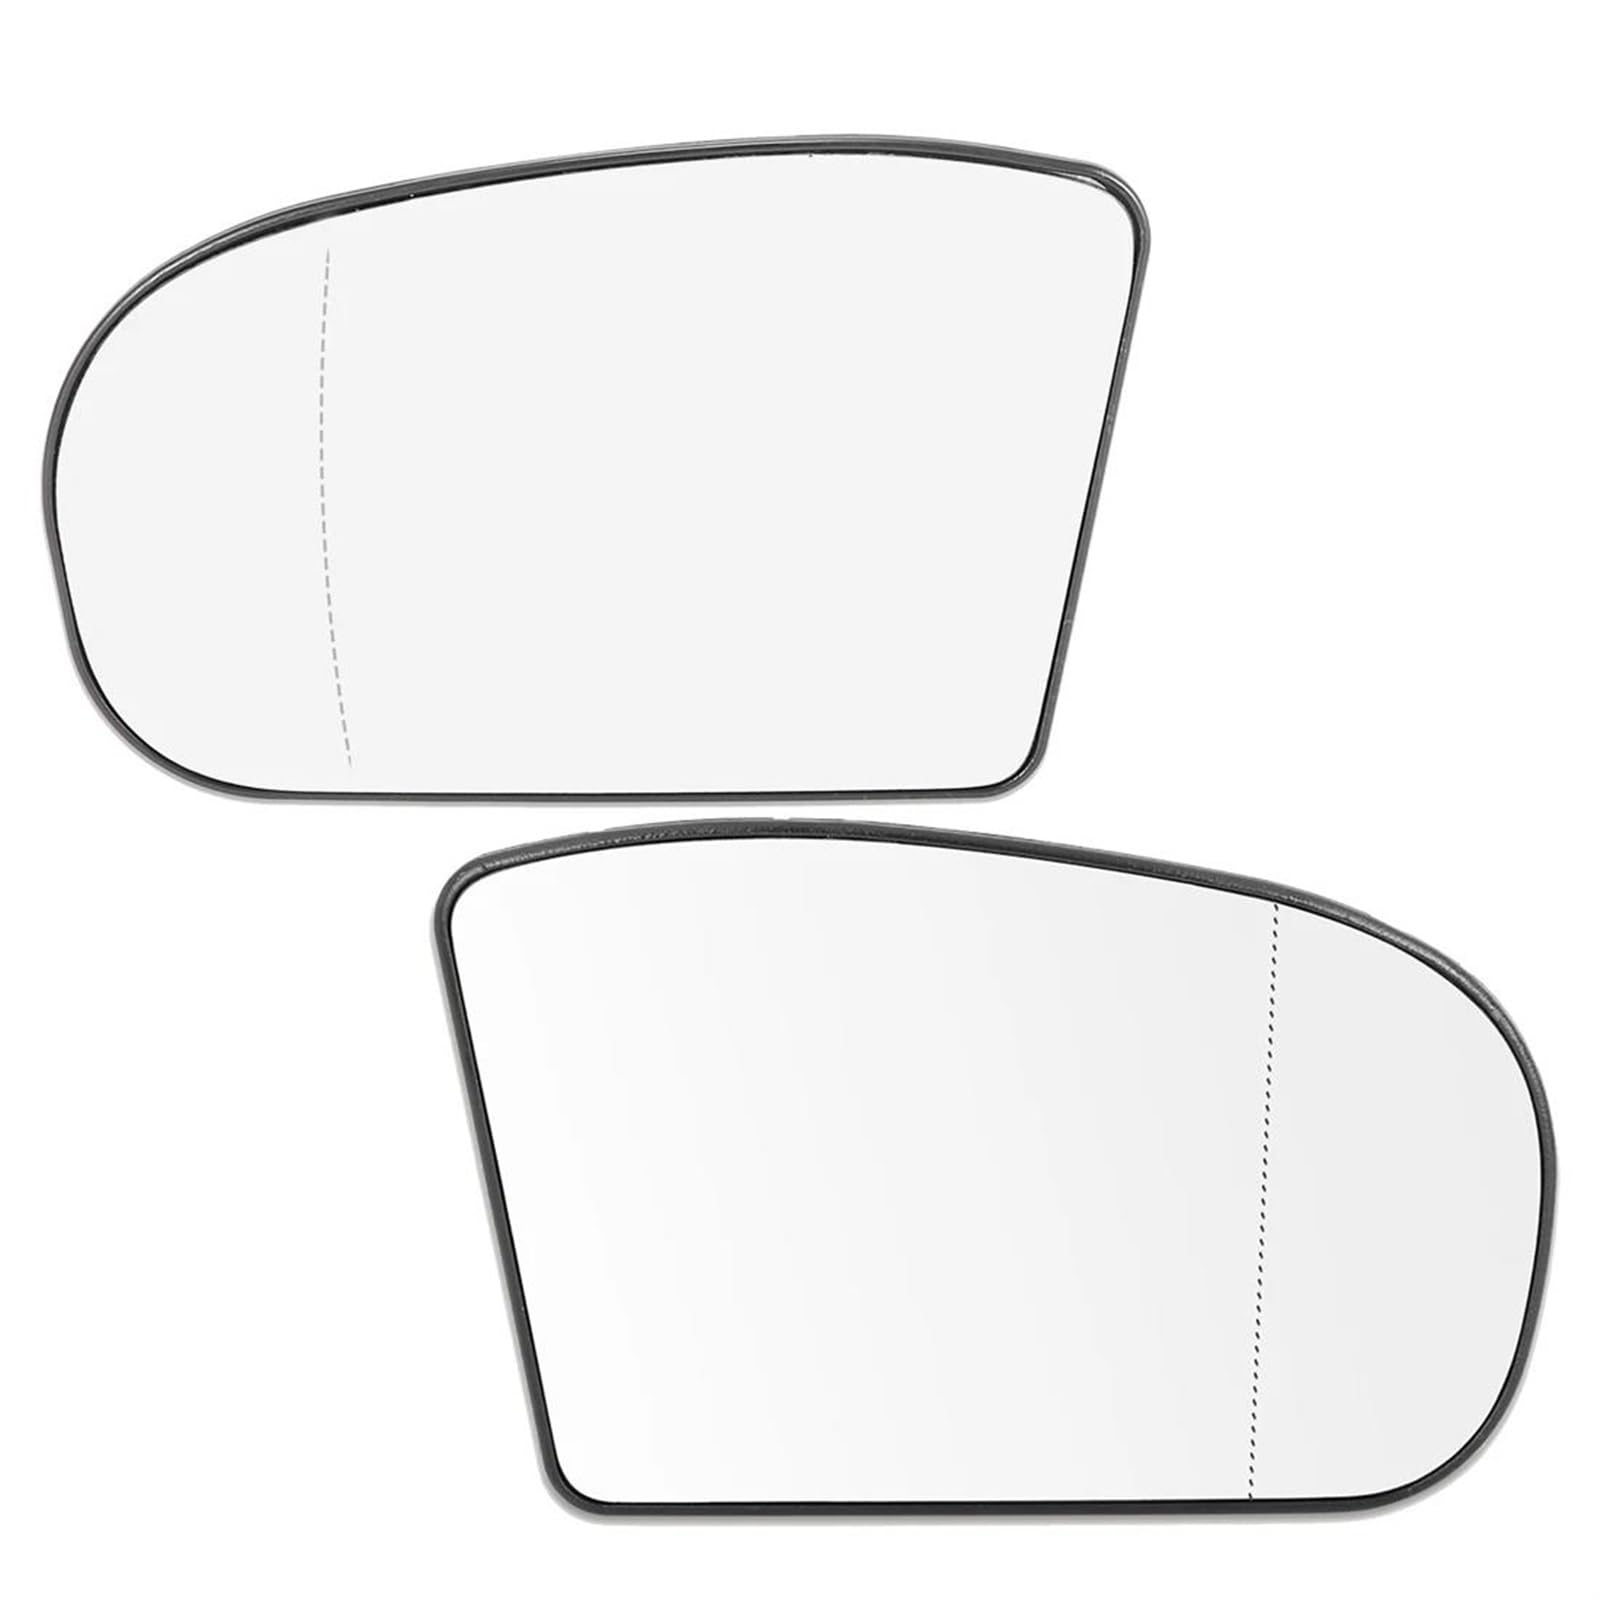 Umkehrlinse Beheiztes Seitenspiegelglas Für Benz C230 E500 E320 E55 Für AMG 03-06 Spiegelglas Mit Trägerplatte Ersatzspiegelglas(Left Right) von DZSYANJIASM